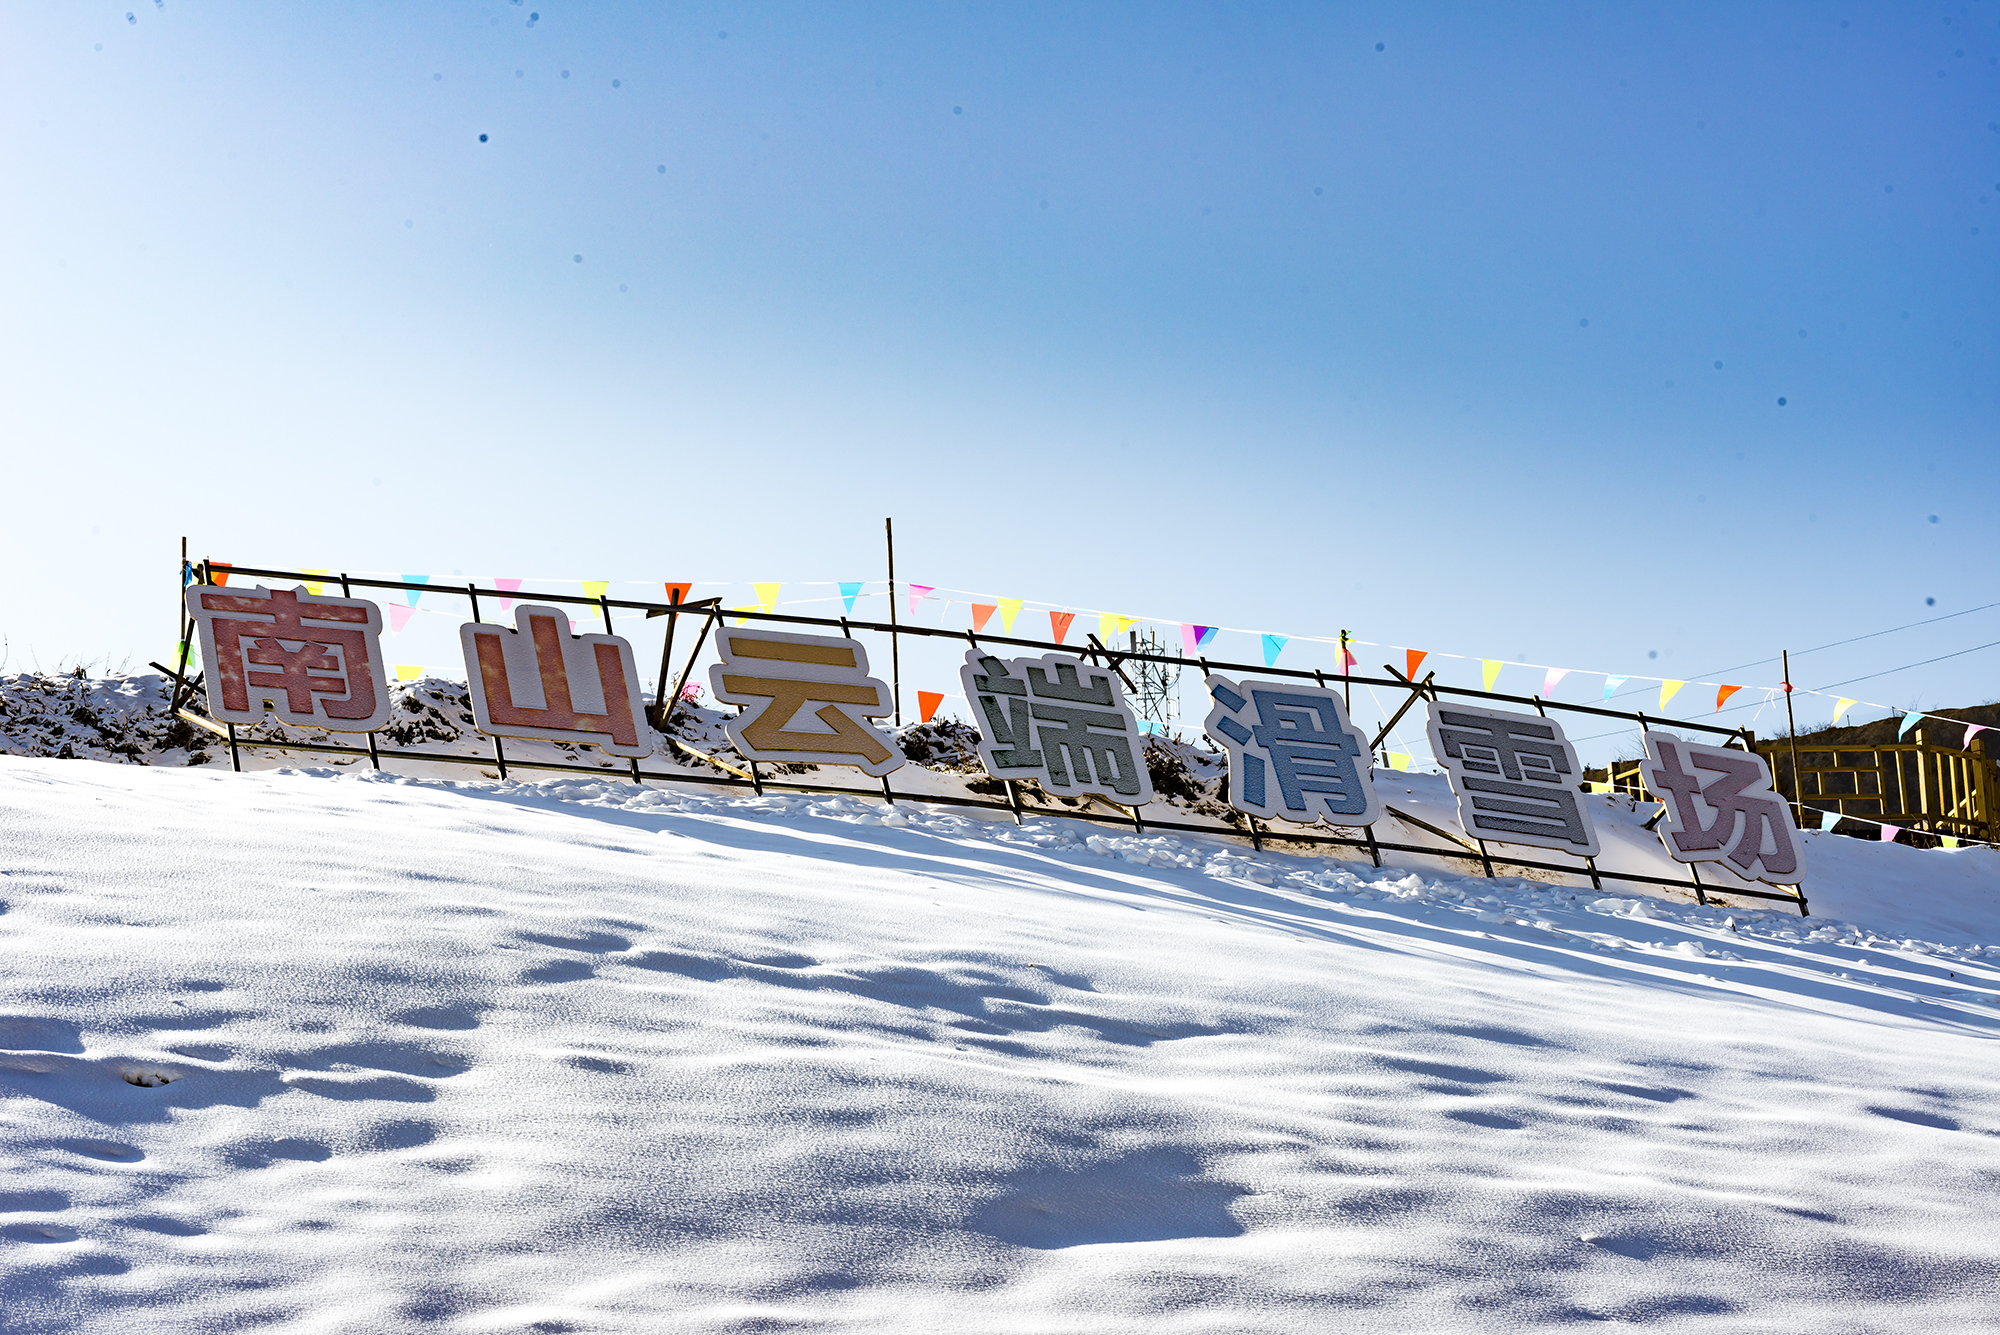 天水市南山云端滑雪场图片